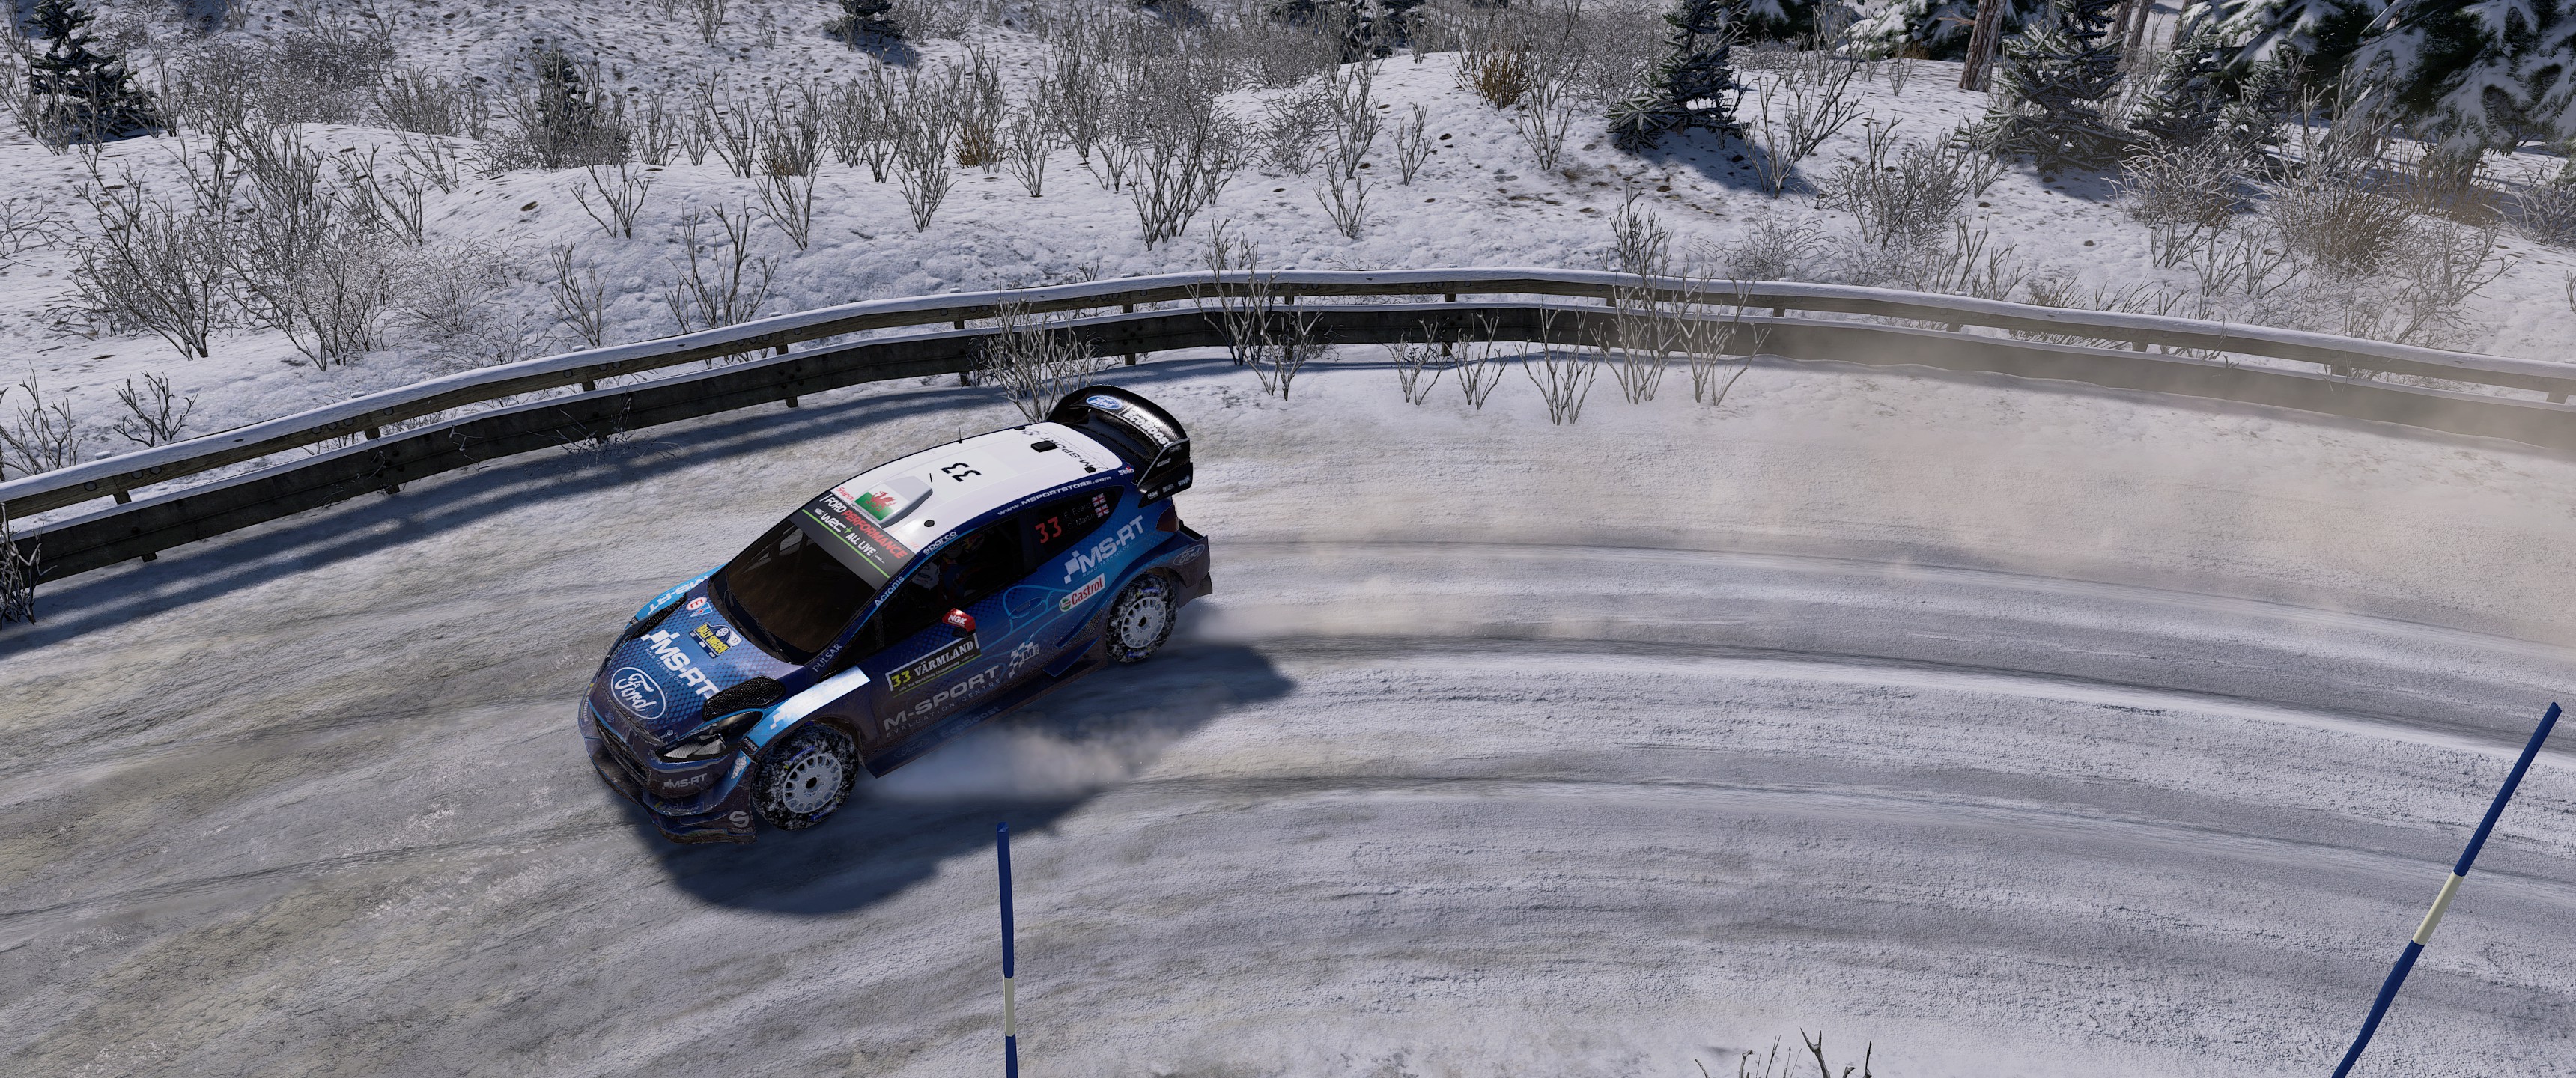 WRC8 2019-12-03 02-41-08.jpg